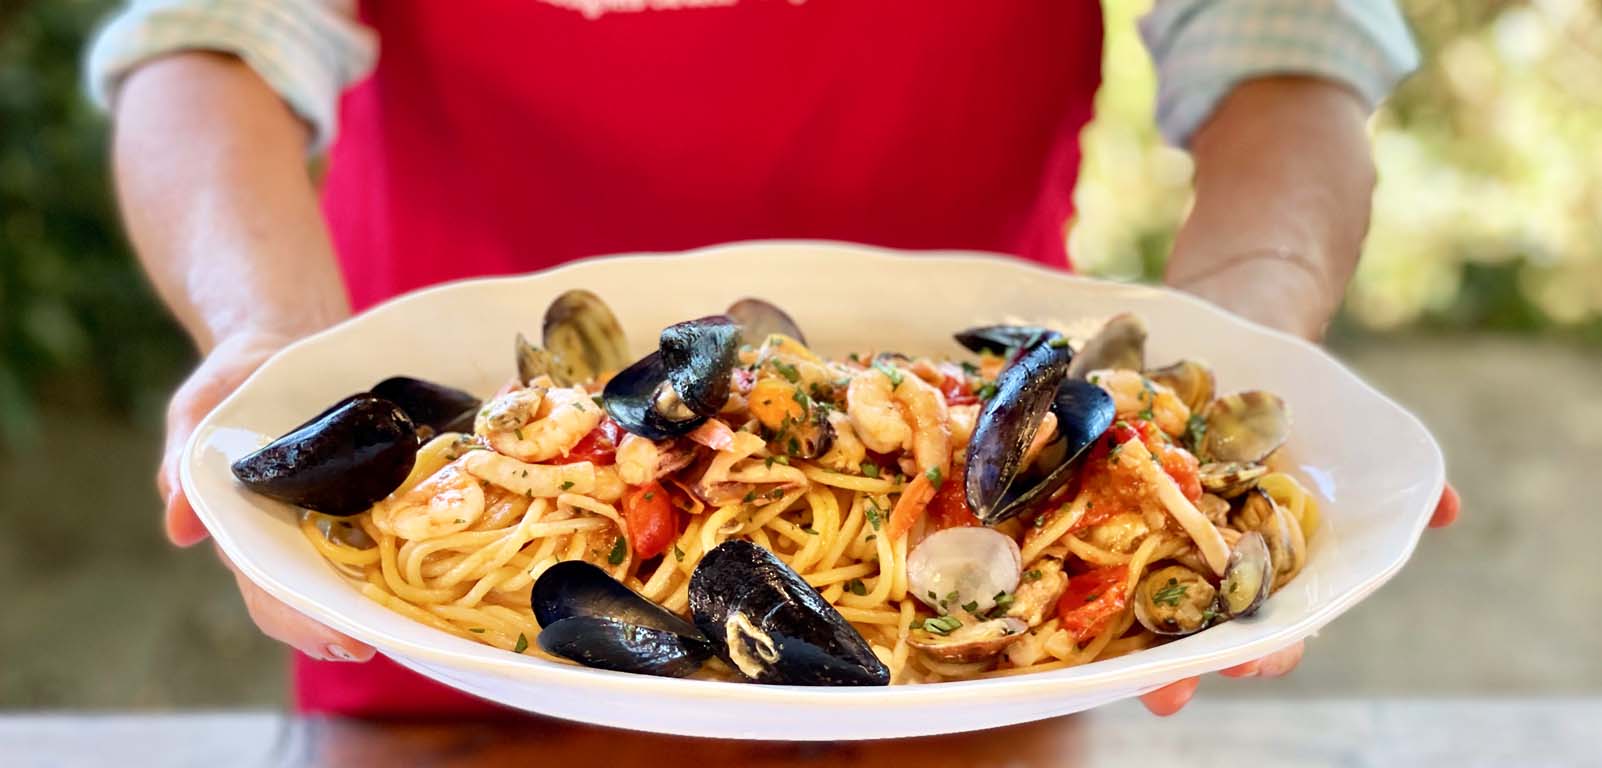 July 23: Spaghetti allo scoglio - Pasta with seafood Class